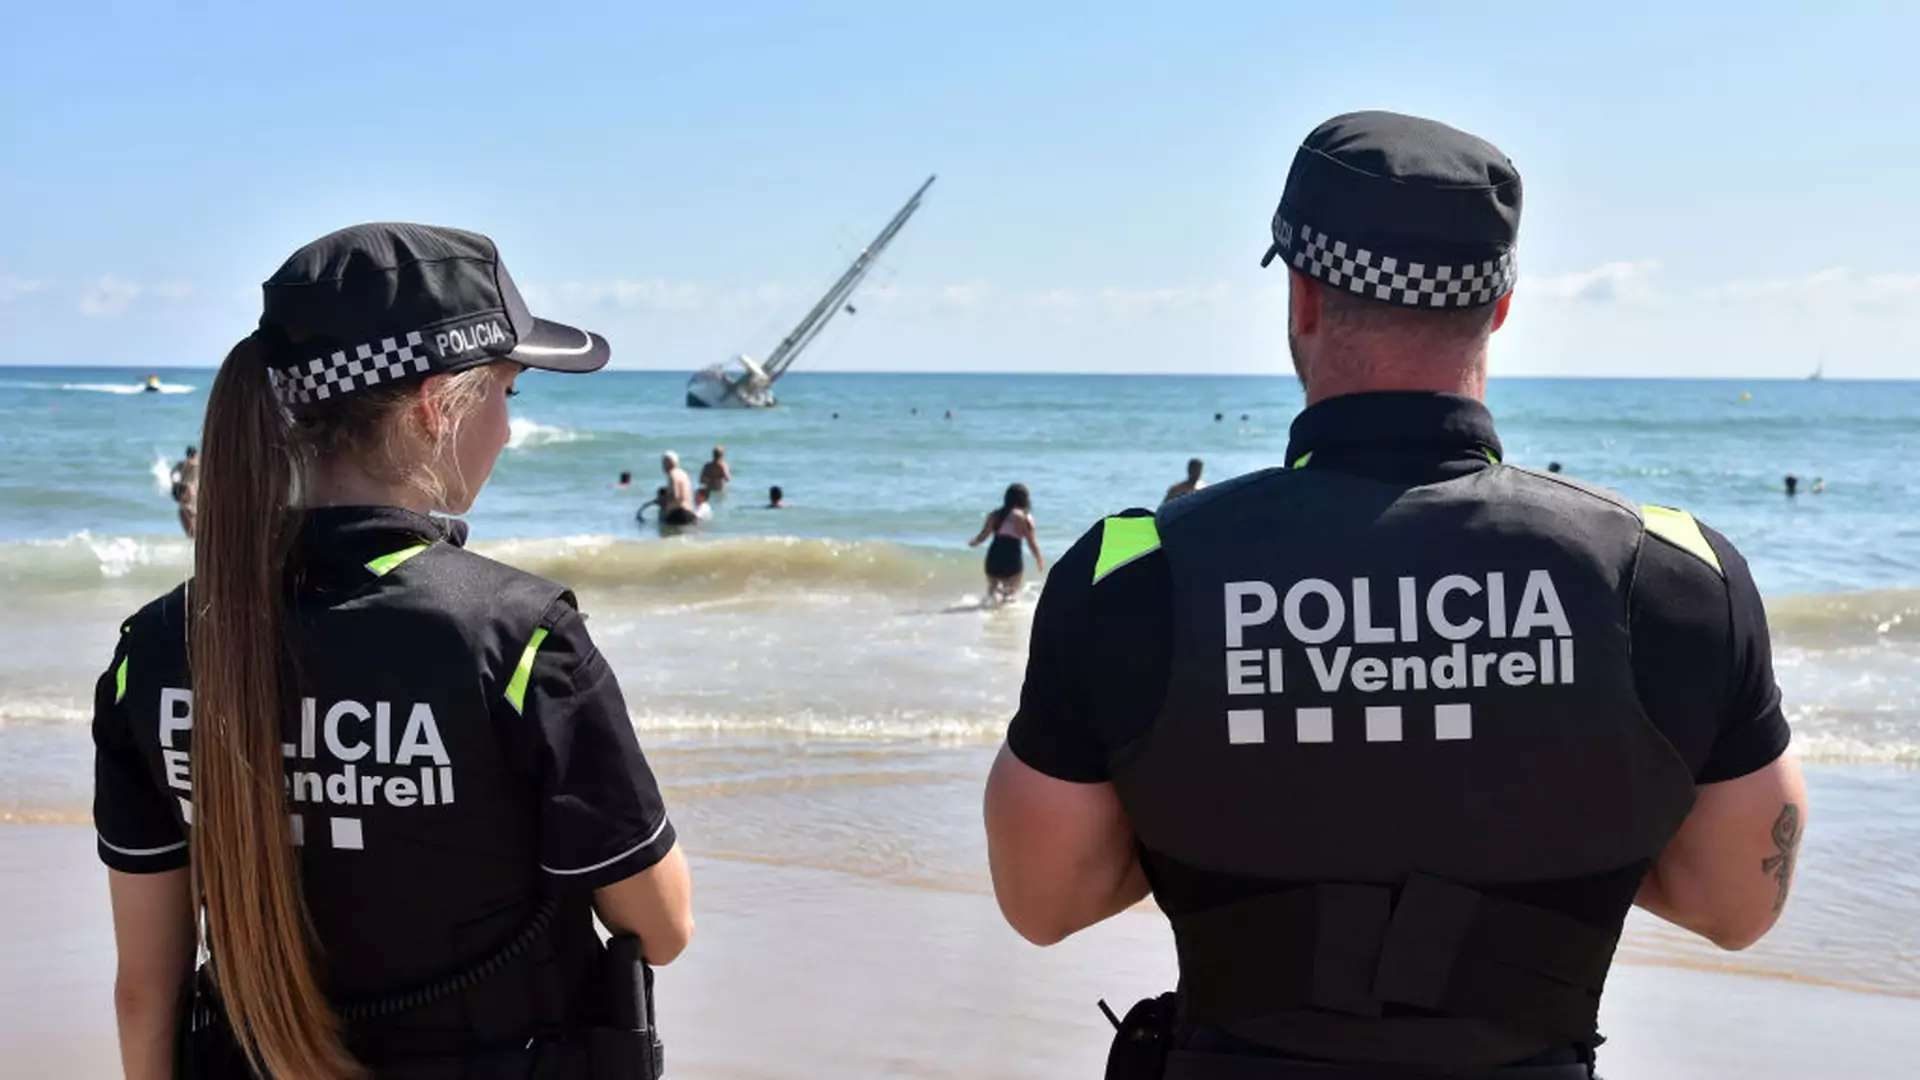 Zakaz palenia, biwakowania i wprowadzania psa. Na plażach w Hiszpanii mandaty nawet do 1500 euro 